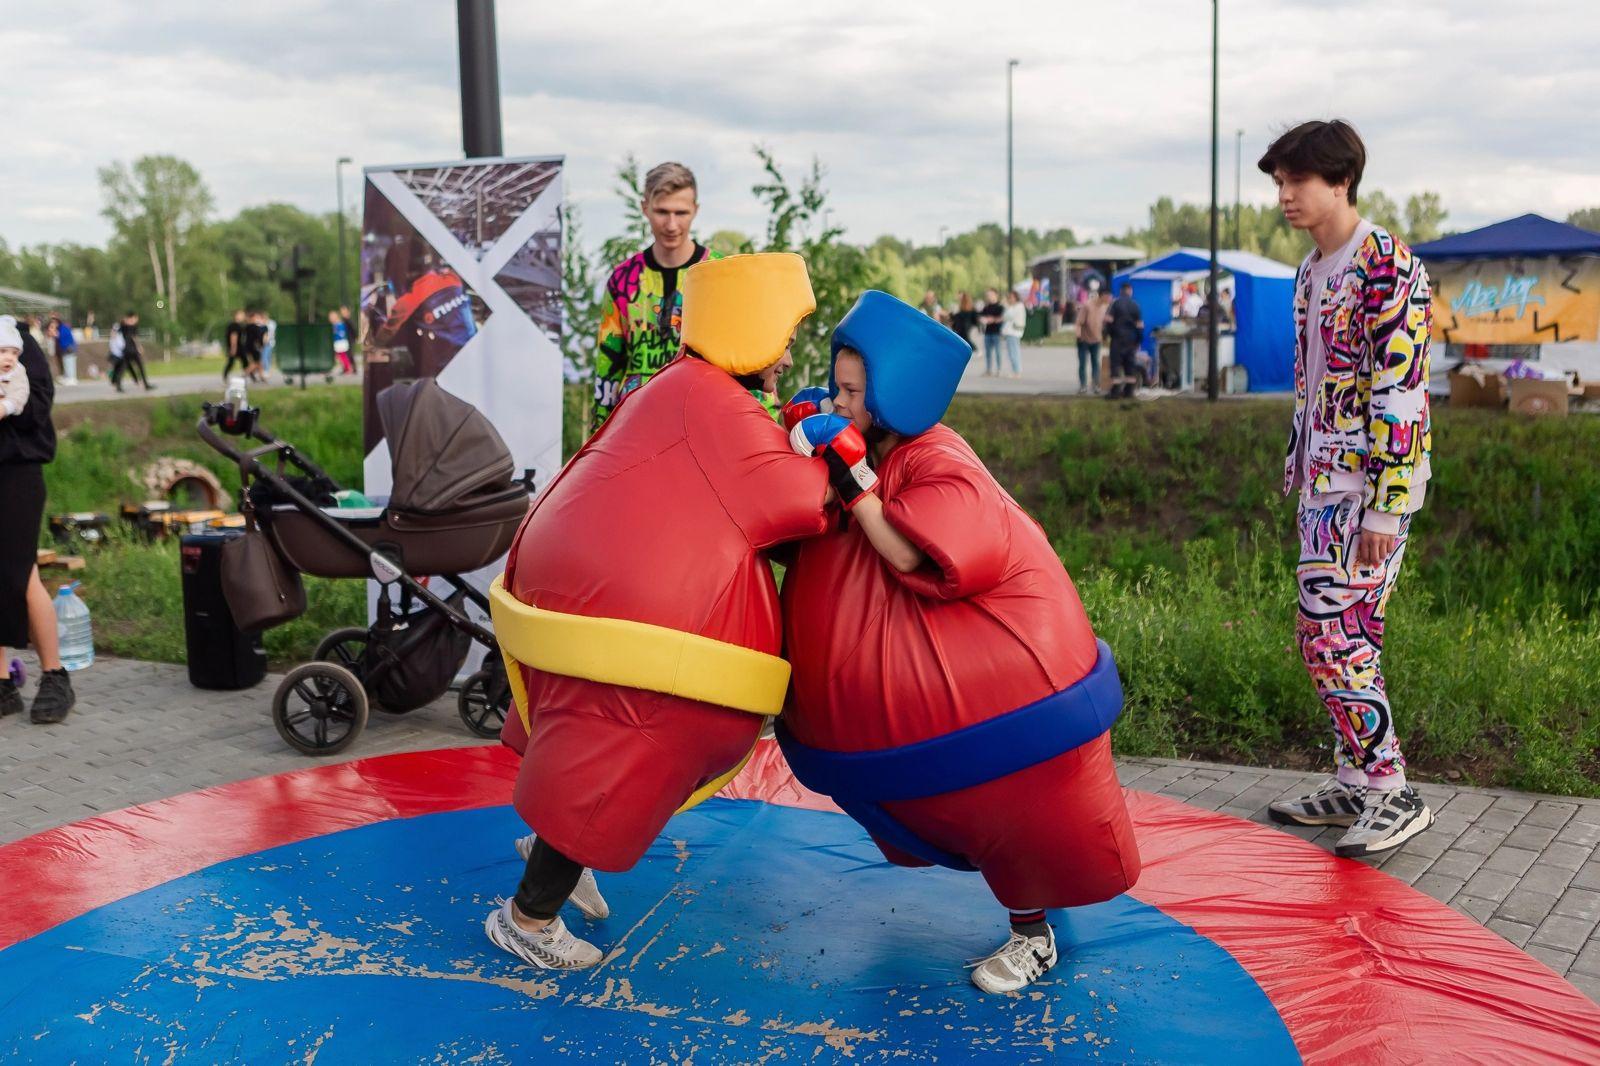 Фото 25 июня Новосибирск отпраздновал 130-летний юбилей : динамичные фото с праздника 3